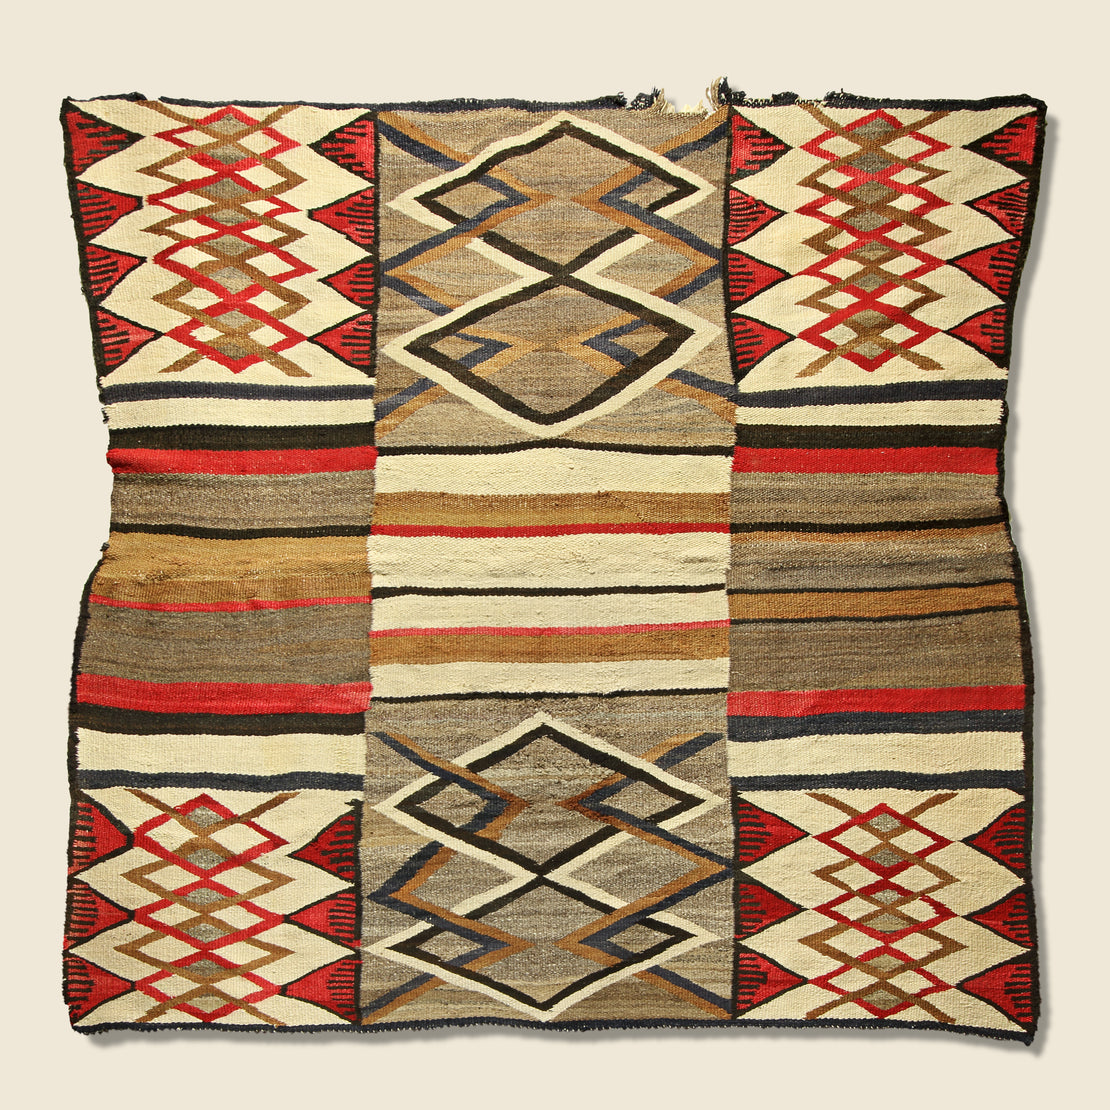 Vintage Patchwork Navajo Rug - Brown/Red/Cream/Black